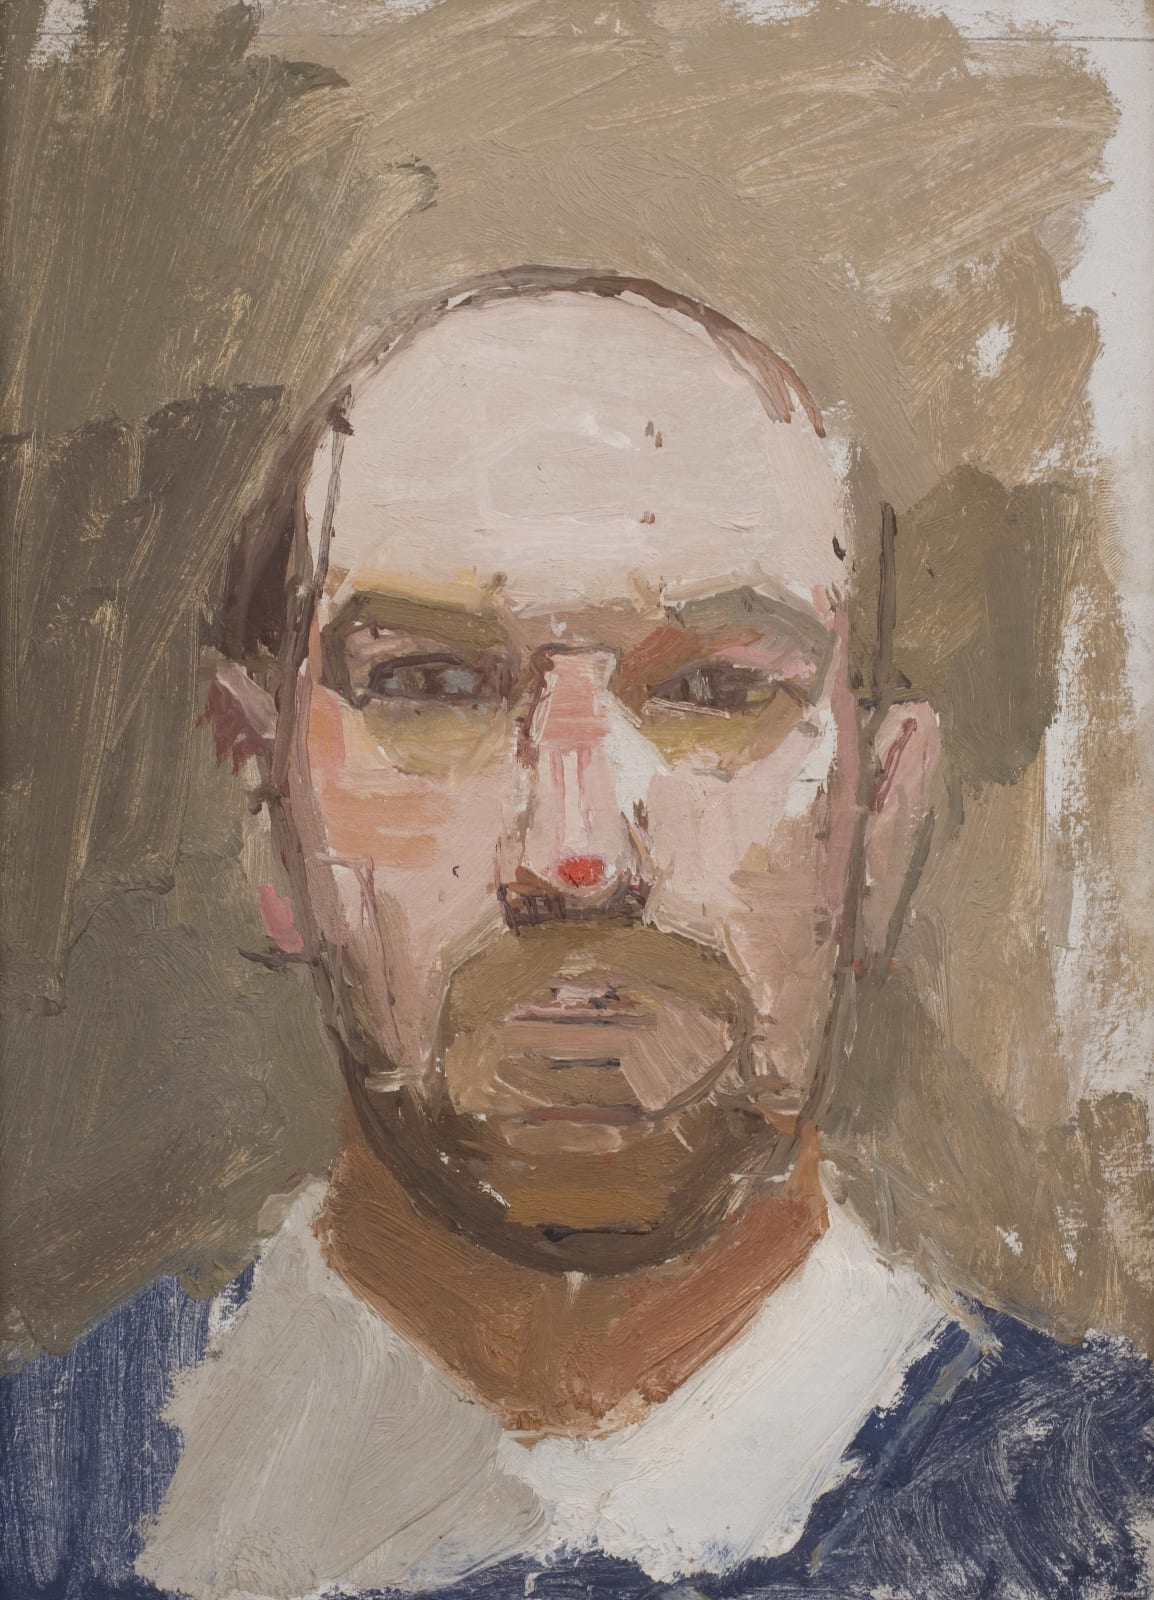 Euan Uglow, Self-Portrait, 1964 c.